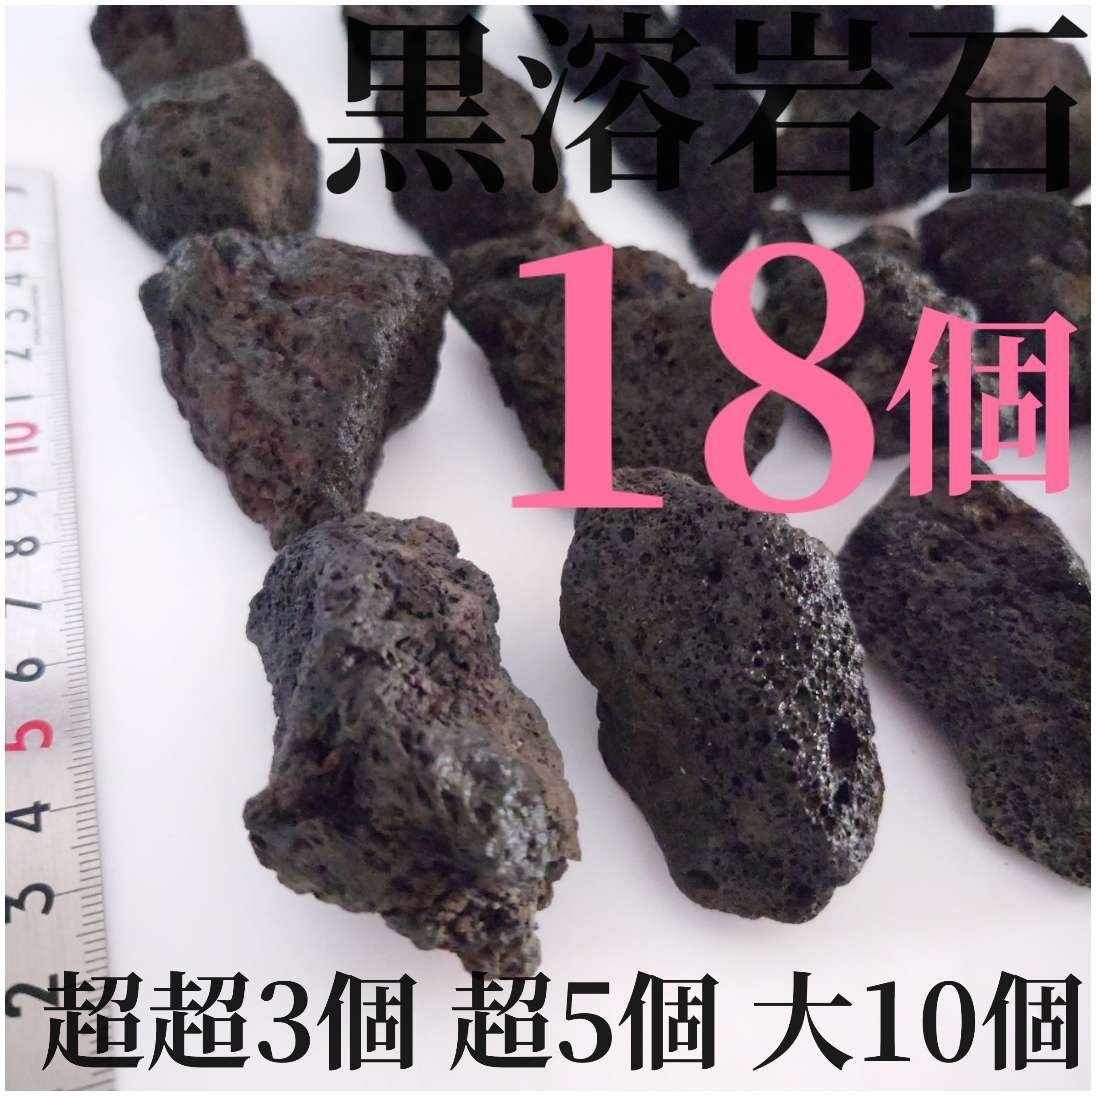 黒溶岩石 18個 【超超3超5大10】☆アクアリウム、テラリウム、苔リウムに最適